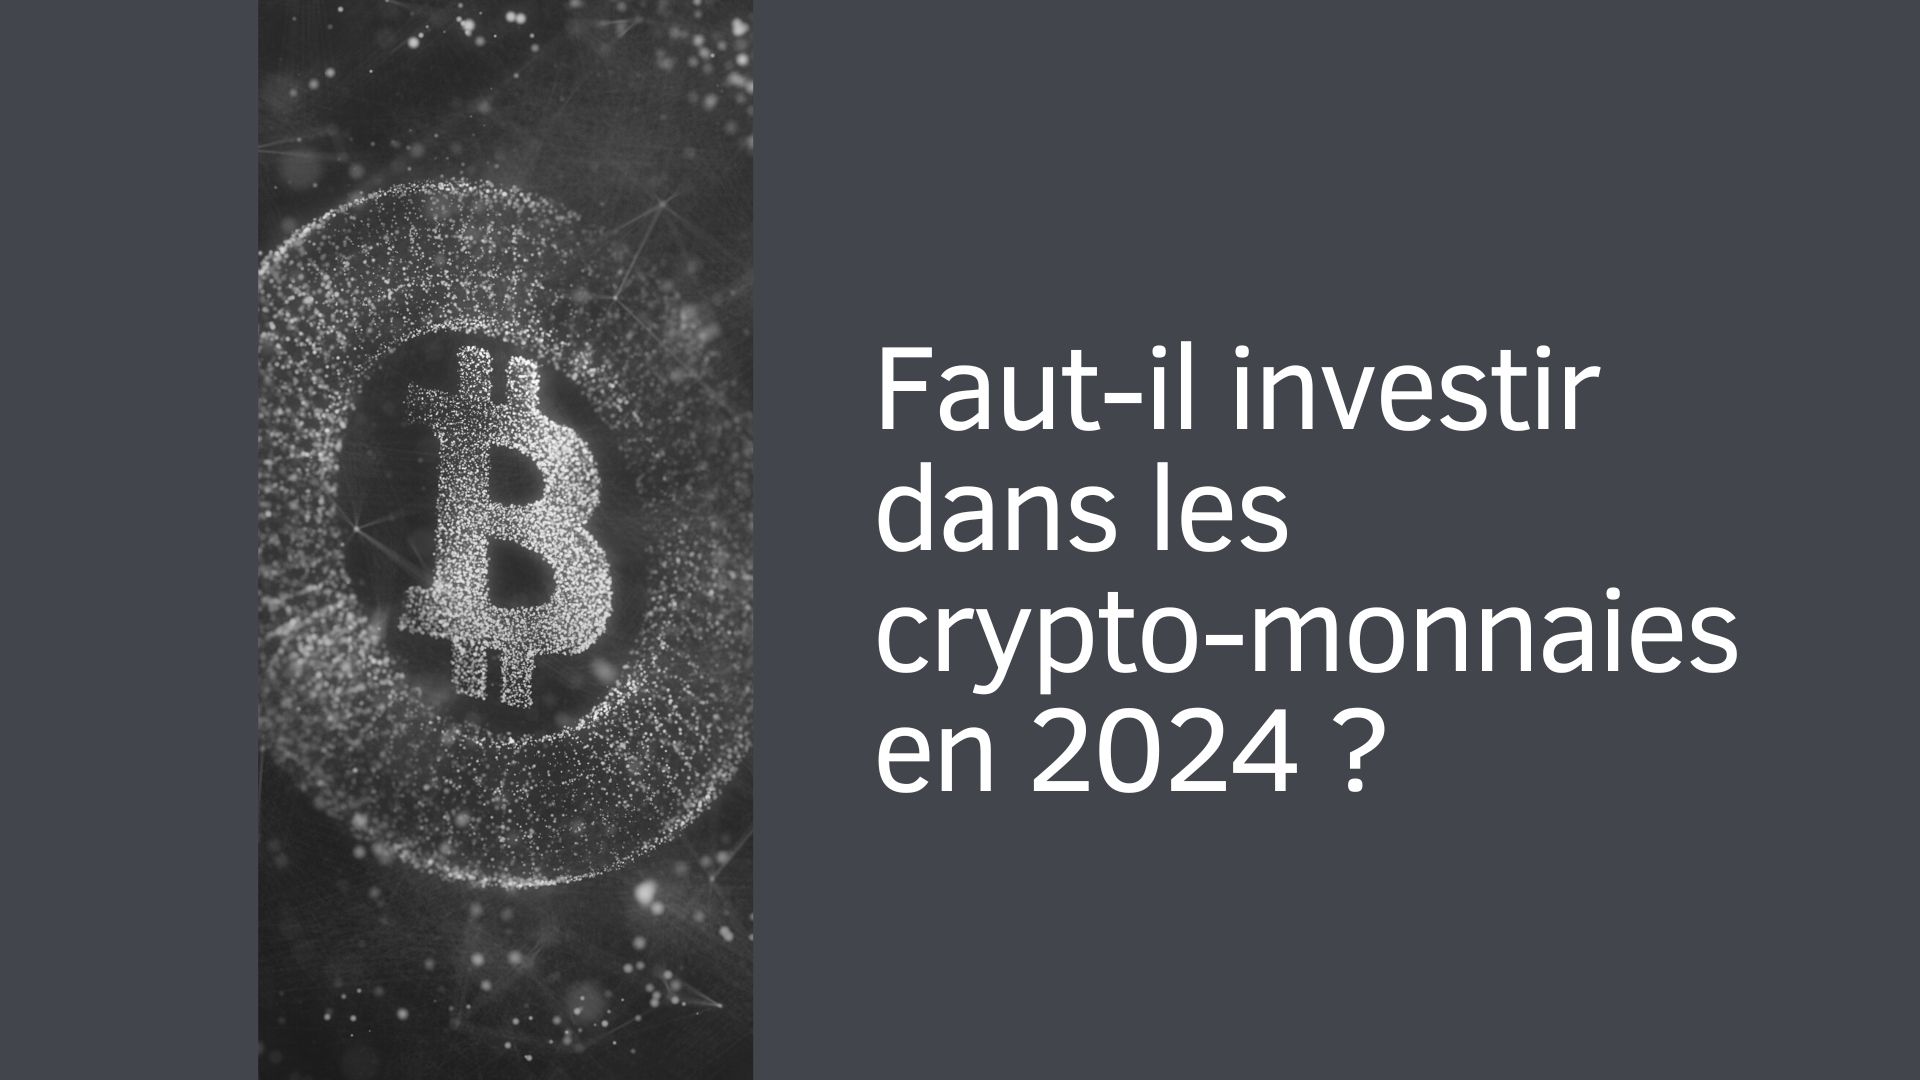 Faut-il investir dans les crypto-monnaies en 2024 ?